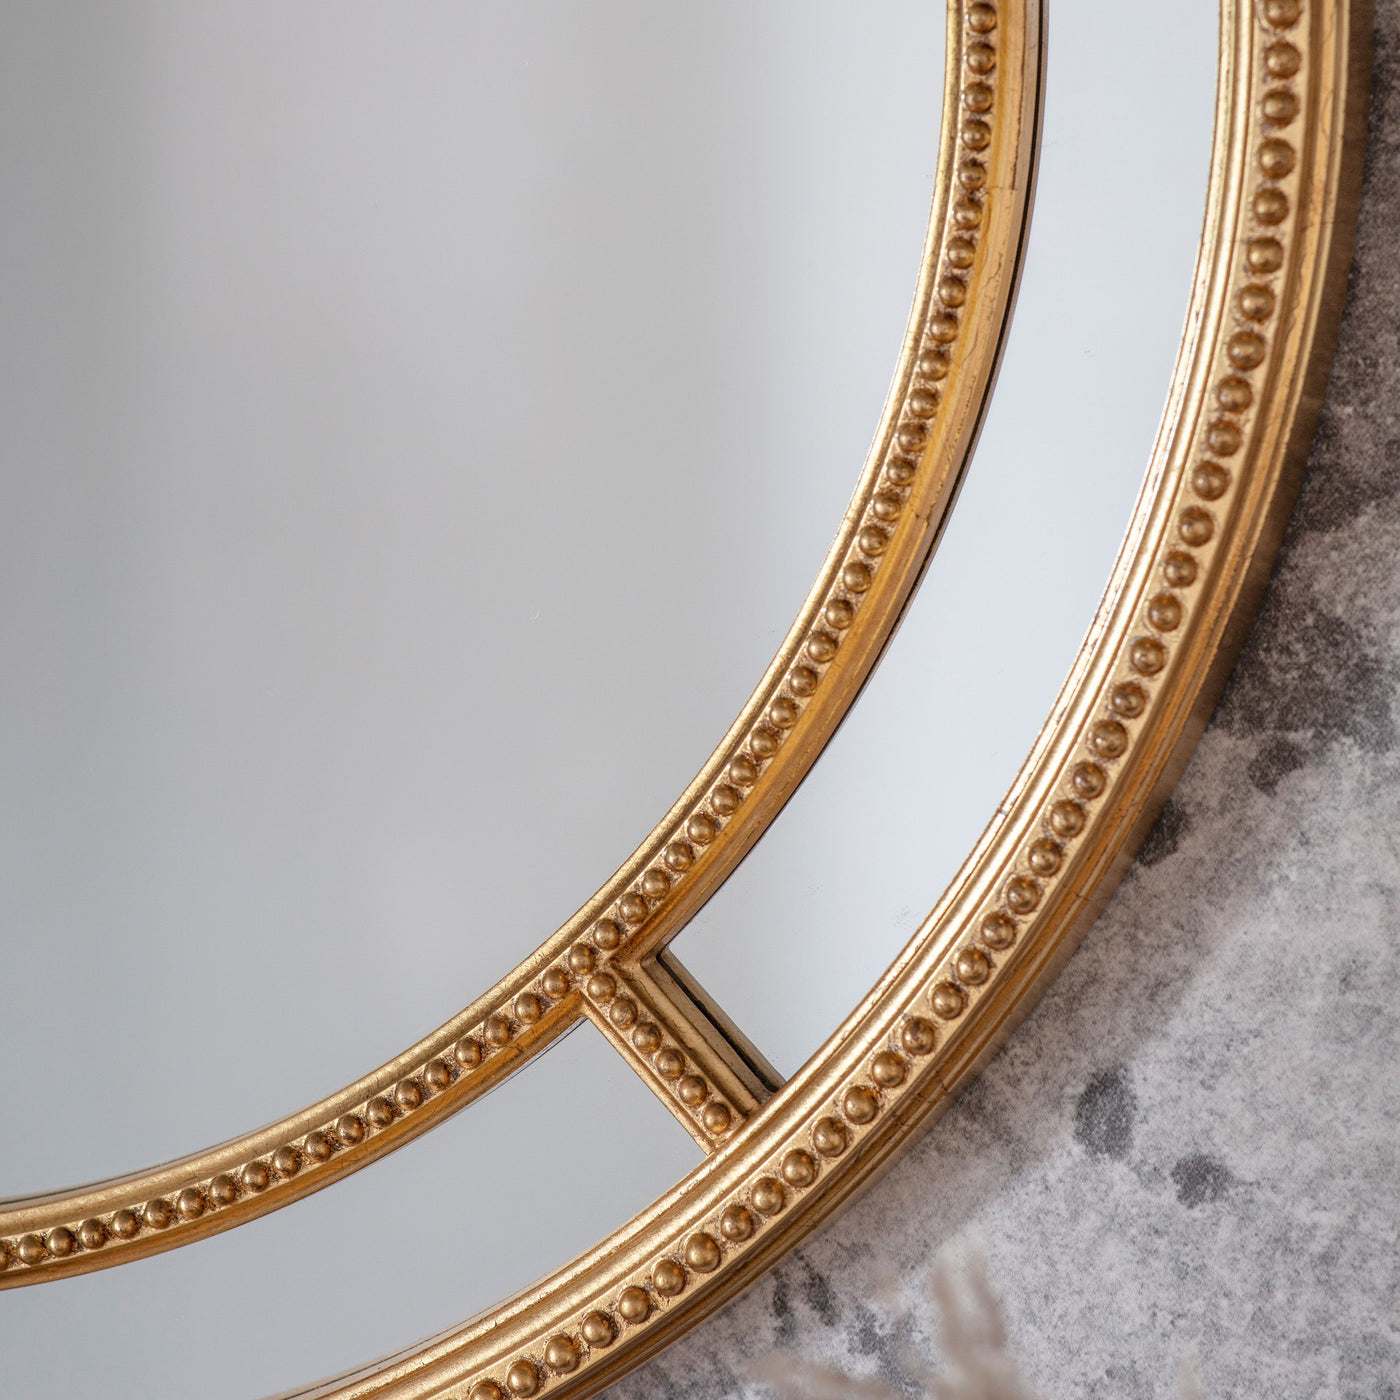 Grangemouth Round Mirror Gold